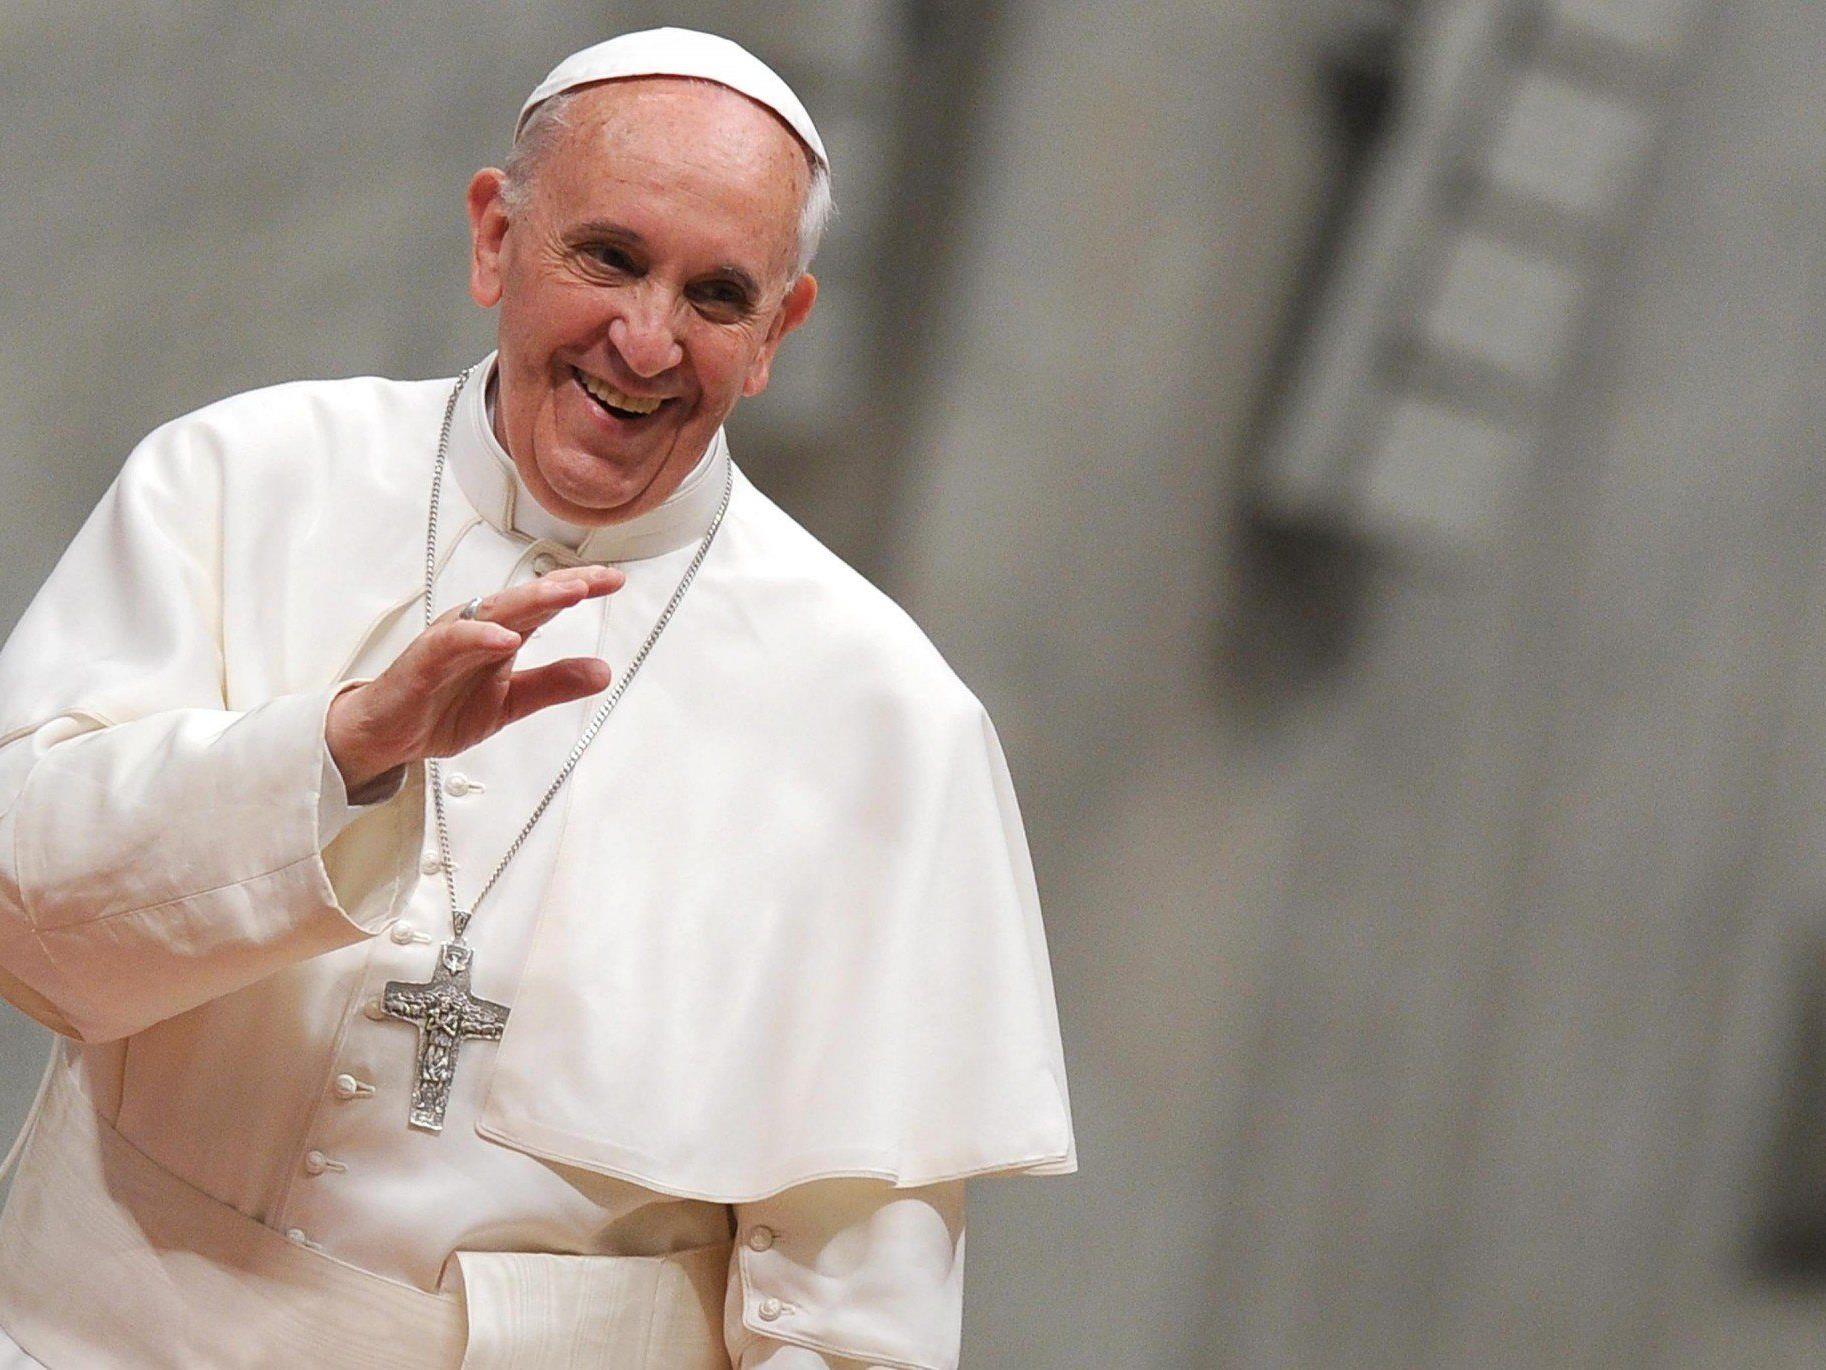 Mit der einfachen Art des lateinamerikanischen Pontifex brach im Vatikan eine neue Ära an.